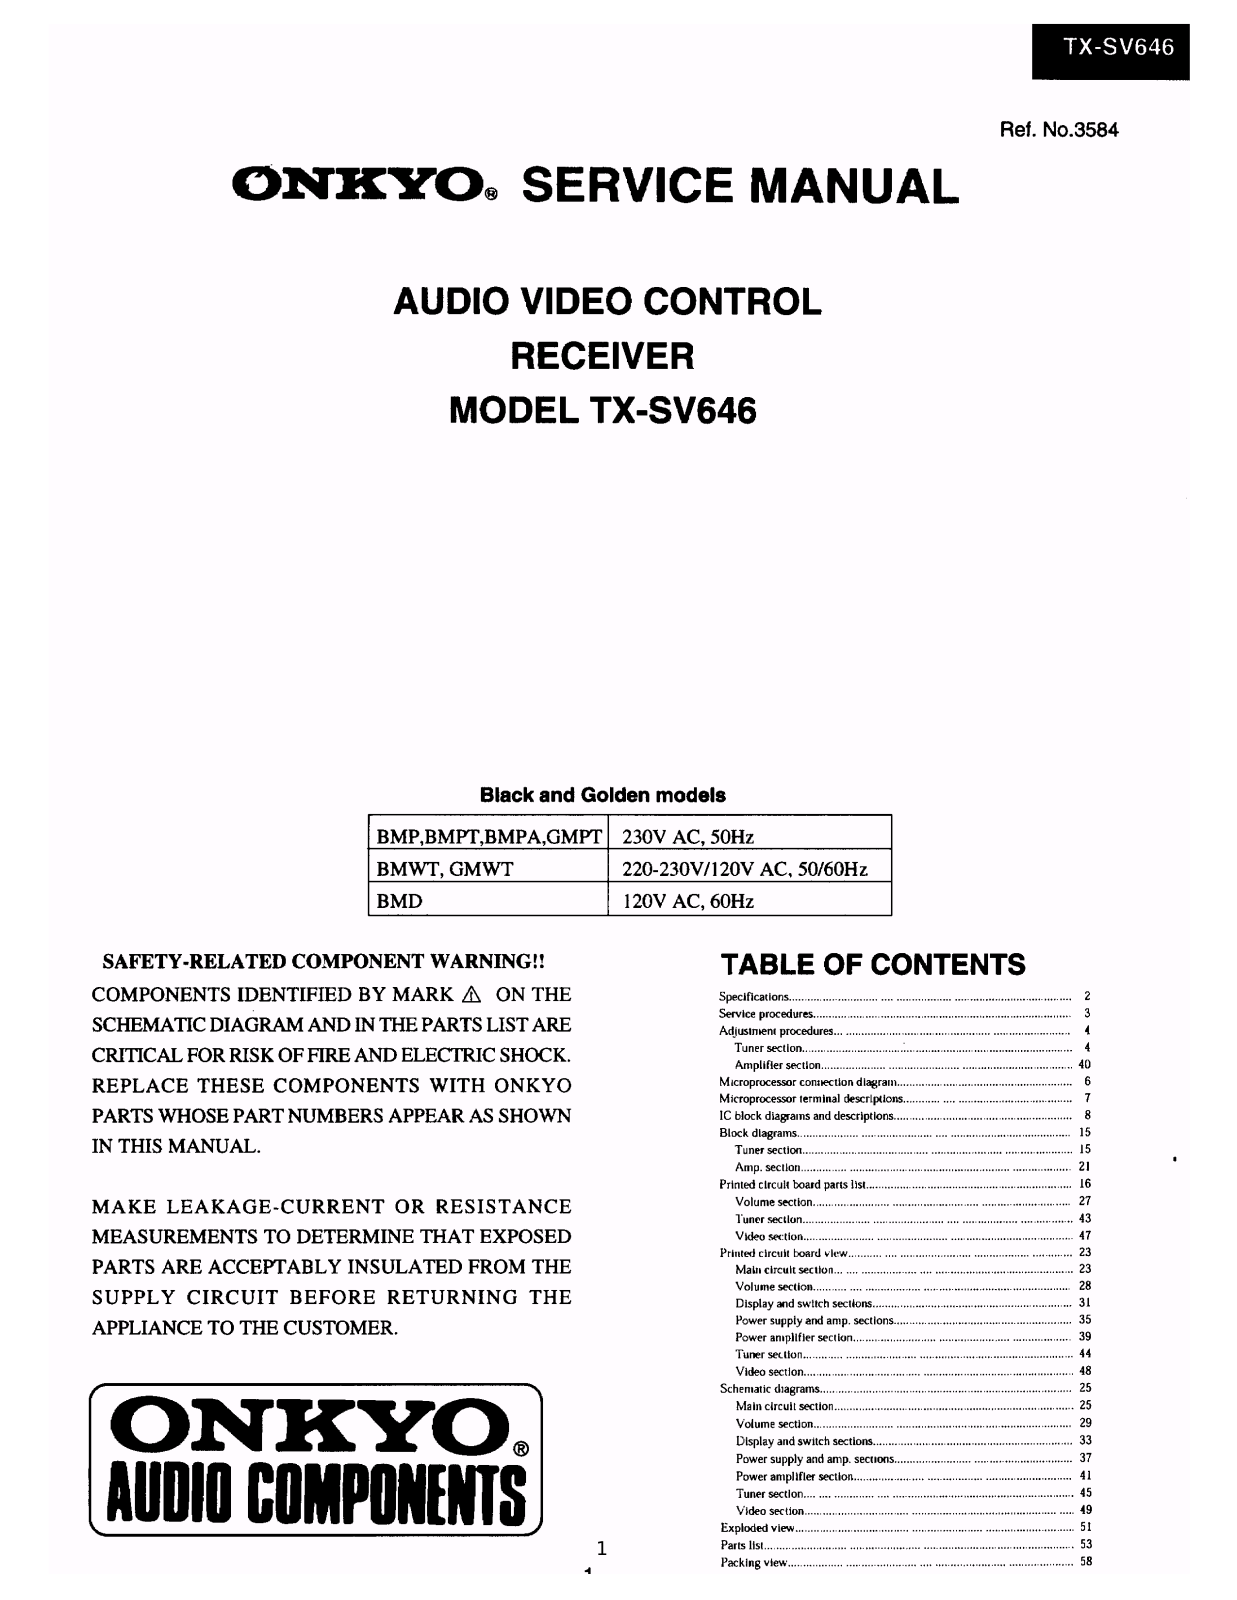 Onkyo TXSV-646 Service Manual